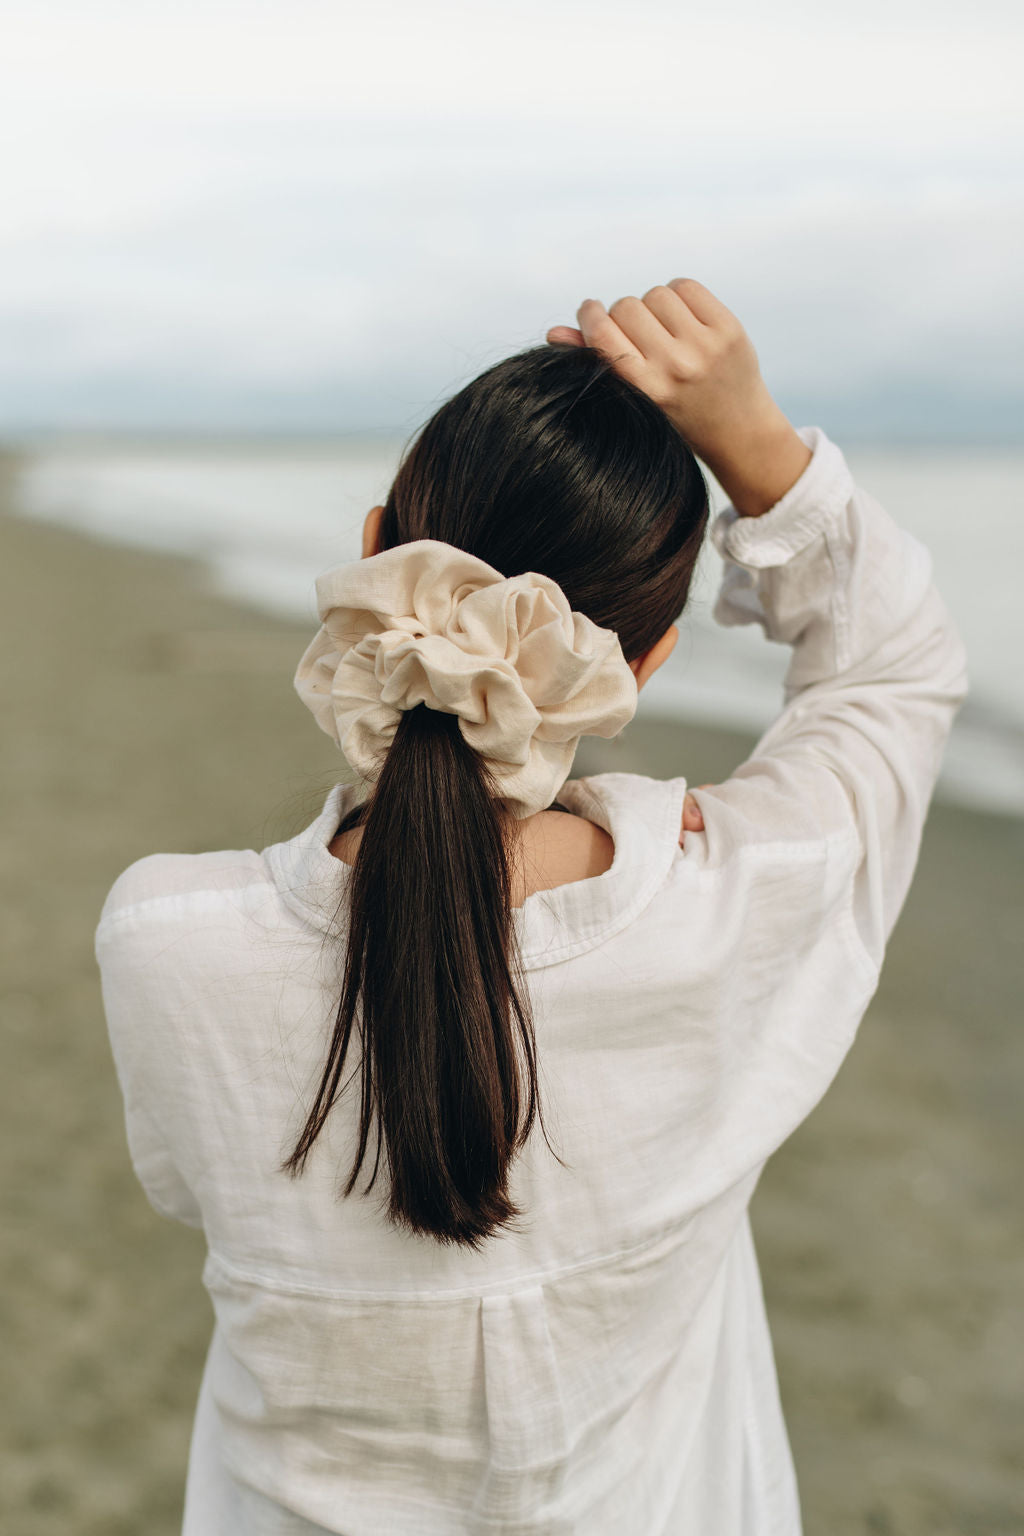 Cream Linen XXL Scrunchie in Model's ponytail